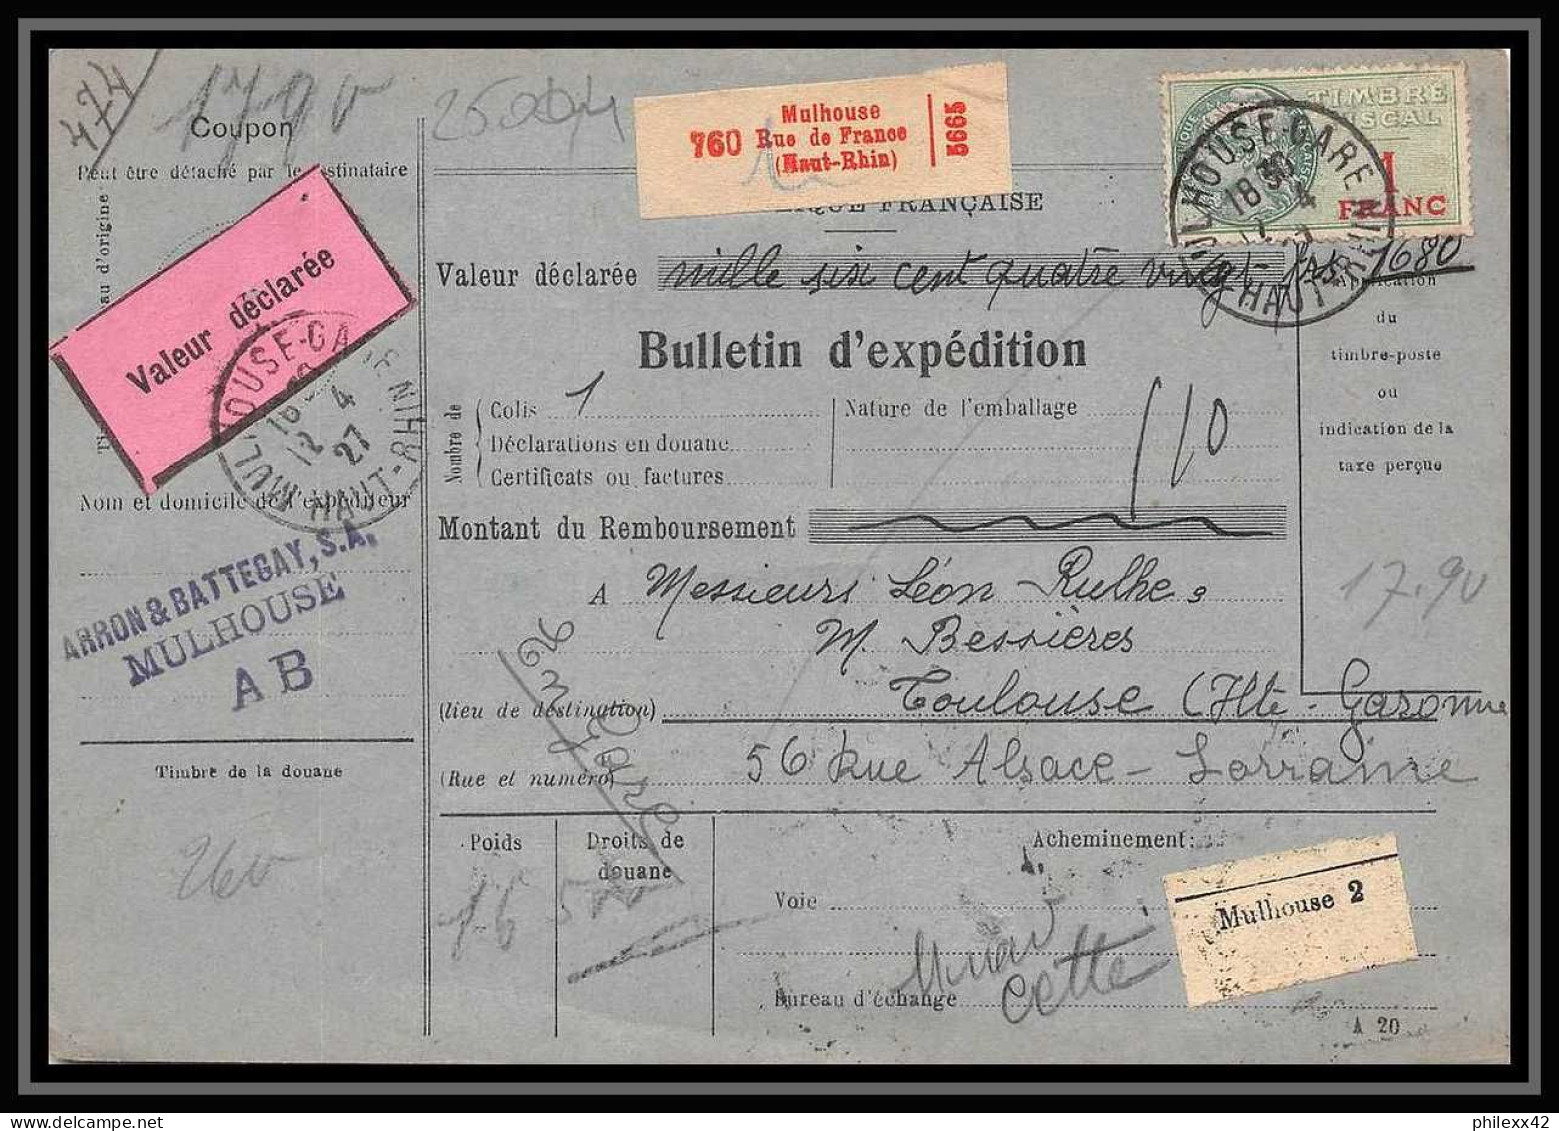 25004 Bulletin D'expédition France Colis Postaux Fiscal Haut Rhin - 1927 Mulhouse Merson 123+207 Valeur Déclarée - Briefe U. Dokumente